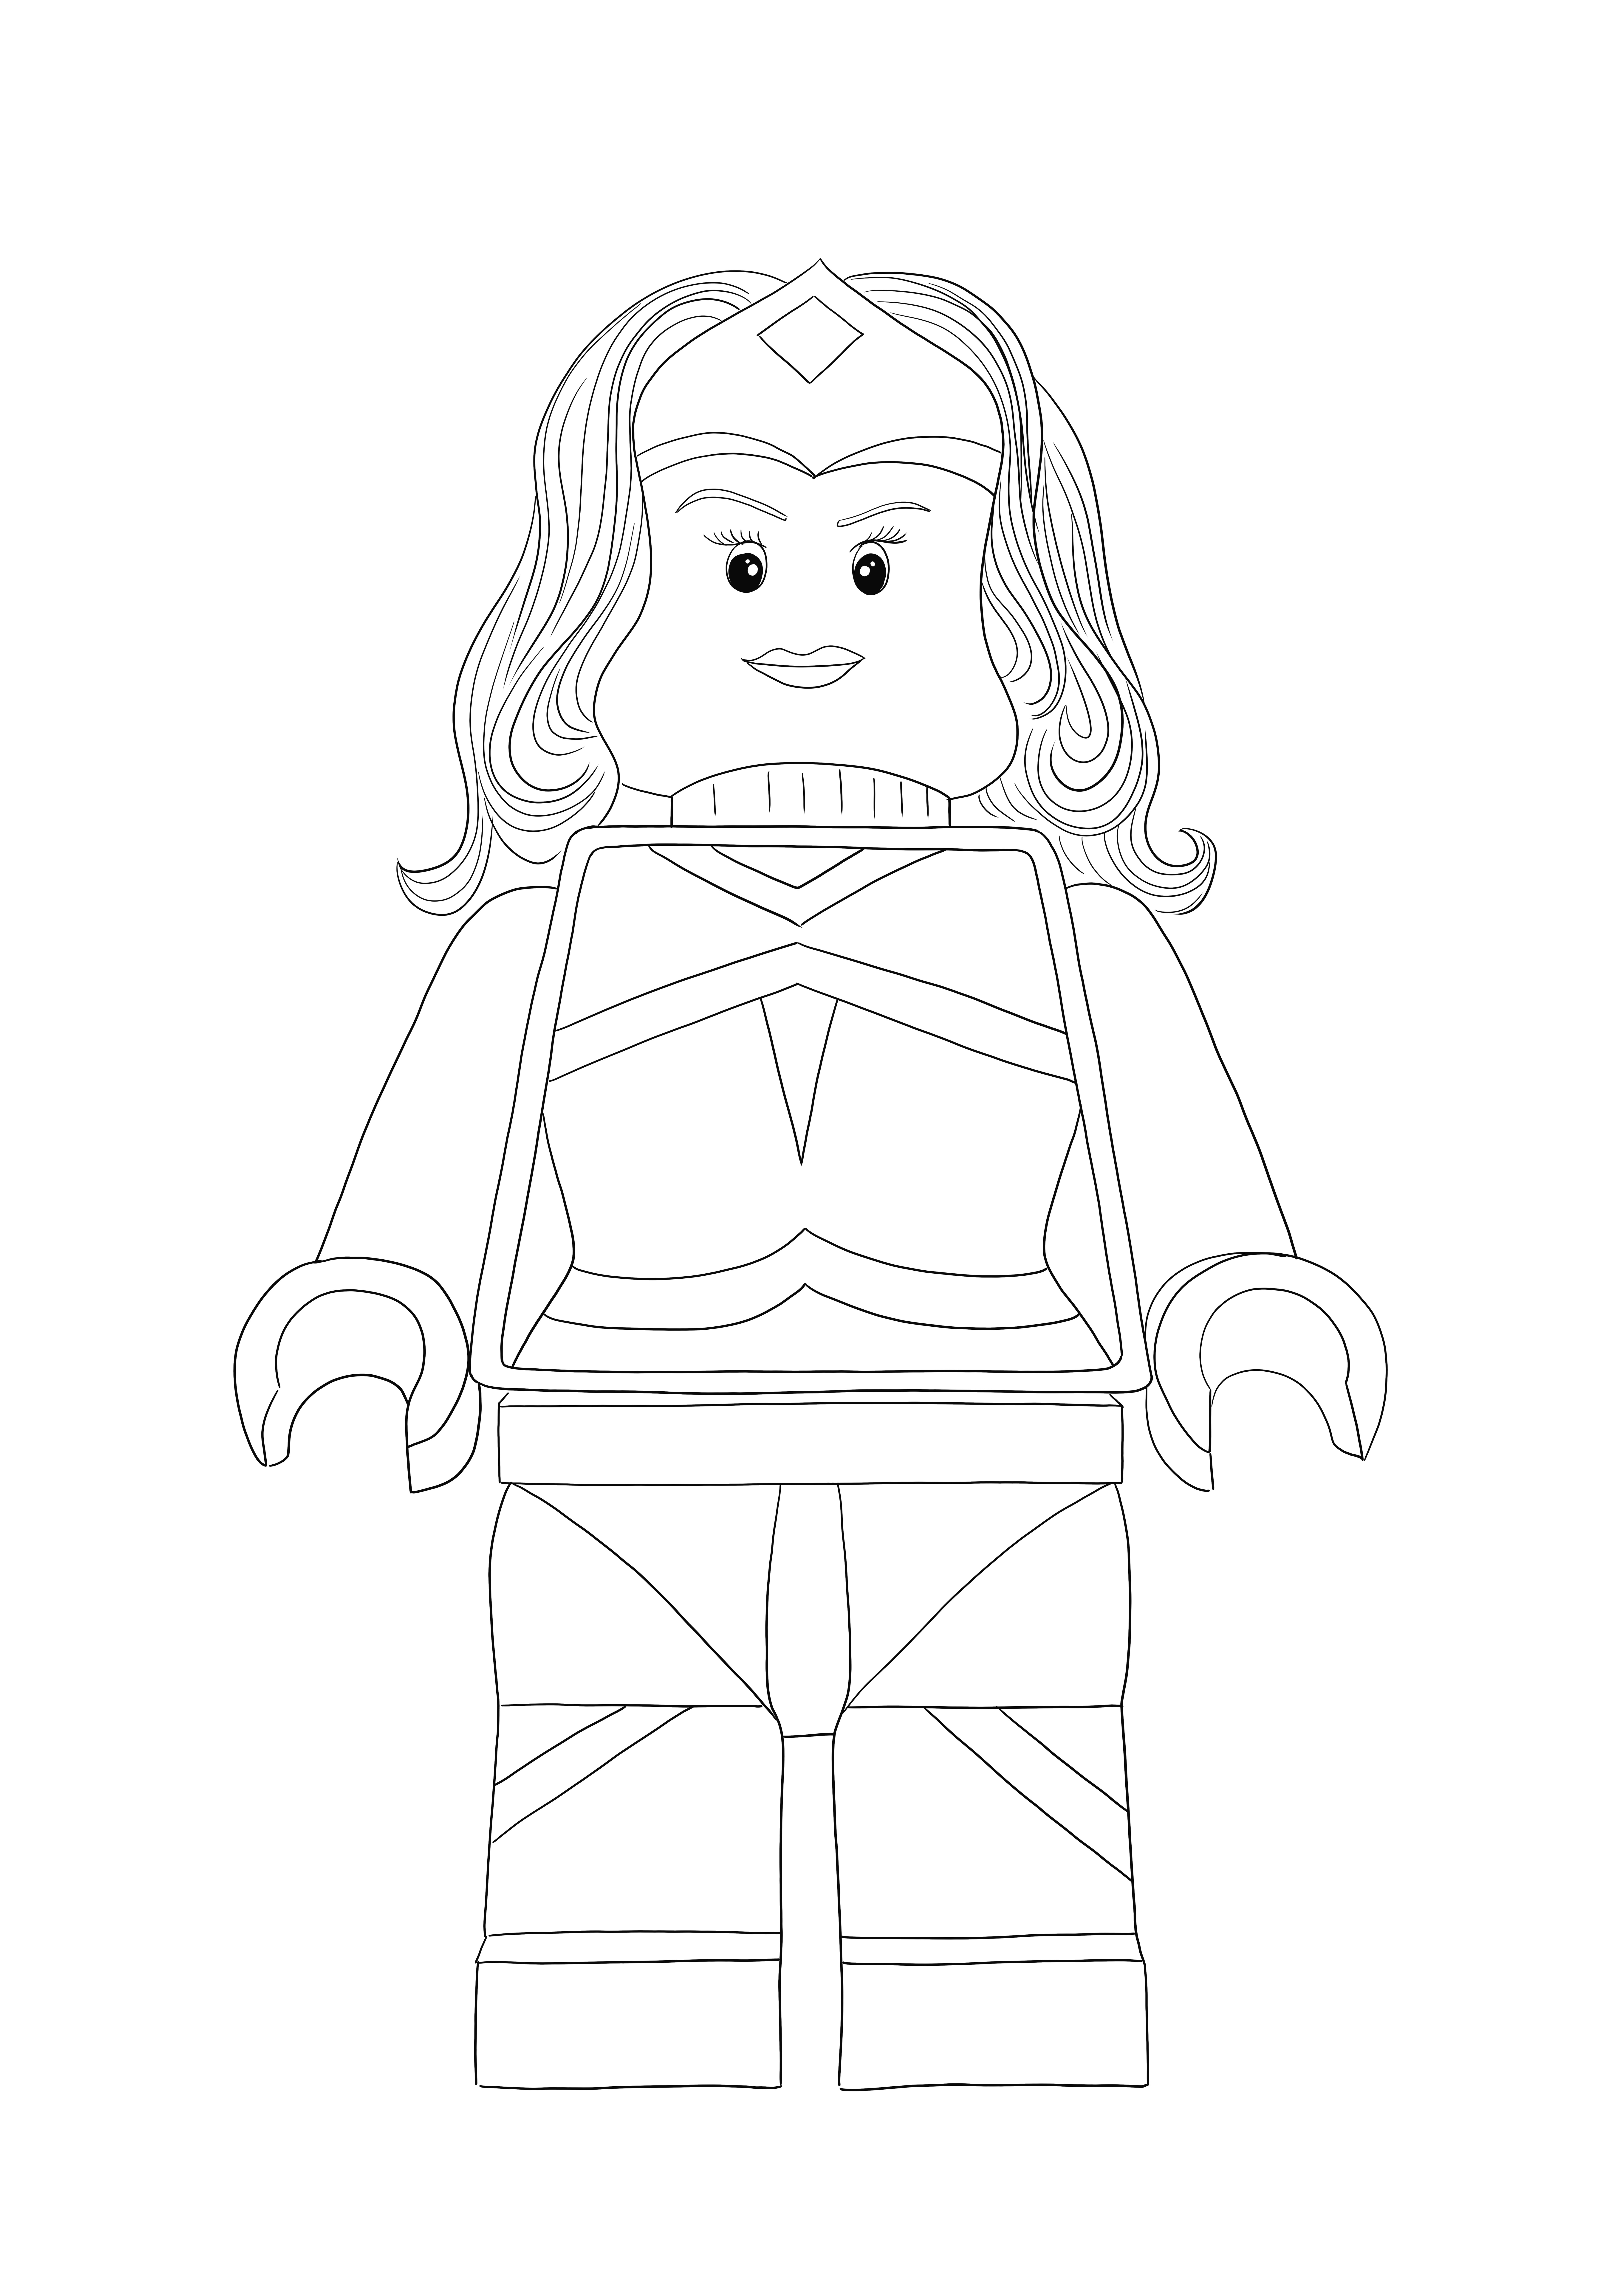 Coloração simples do Lego Wonder Woman grátis para download